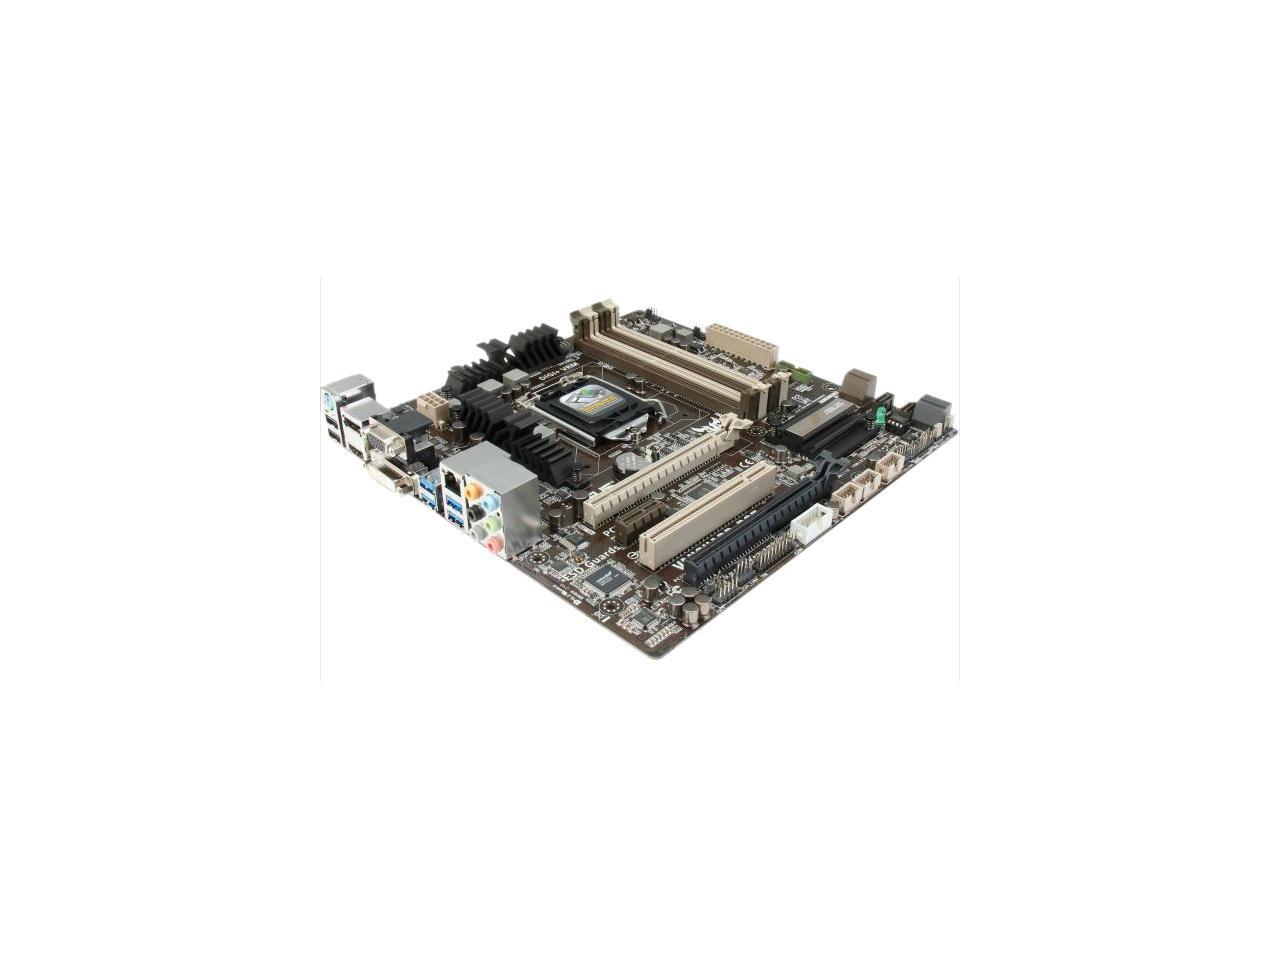 Refurbished: ASUS VANGUARD B85 LGA 1150 Micro ATX Intel 